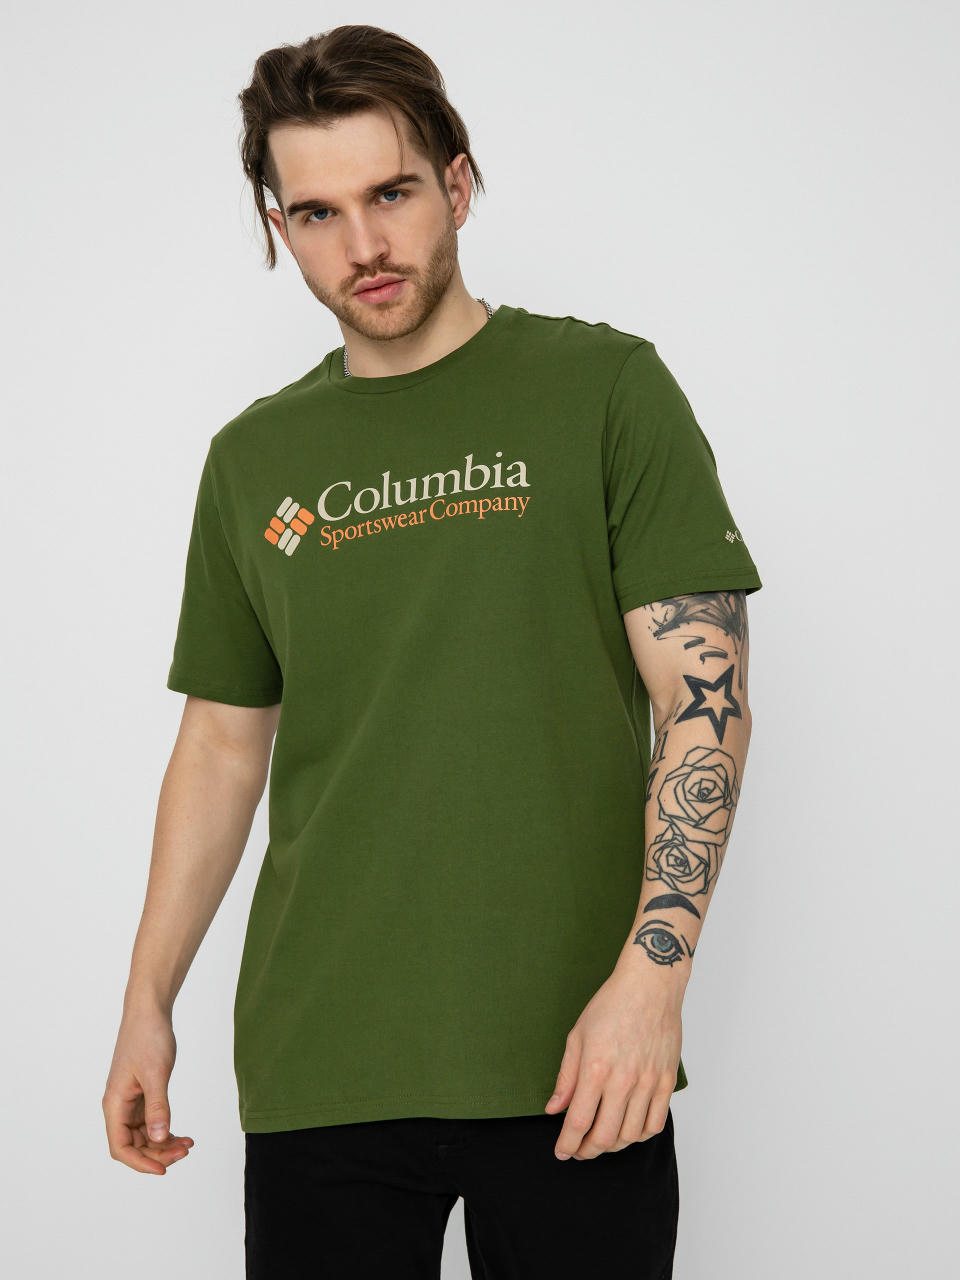 Columbia Deschutes Valley T-shirt (pesto/csc/retr)